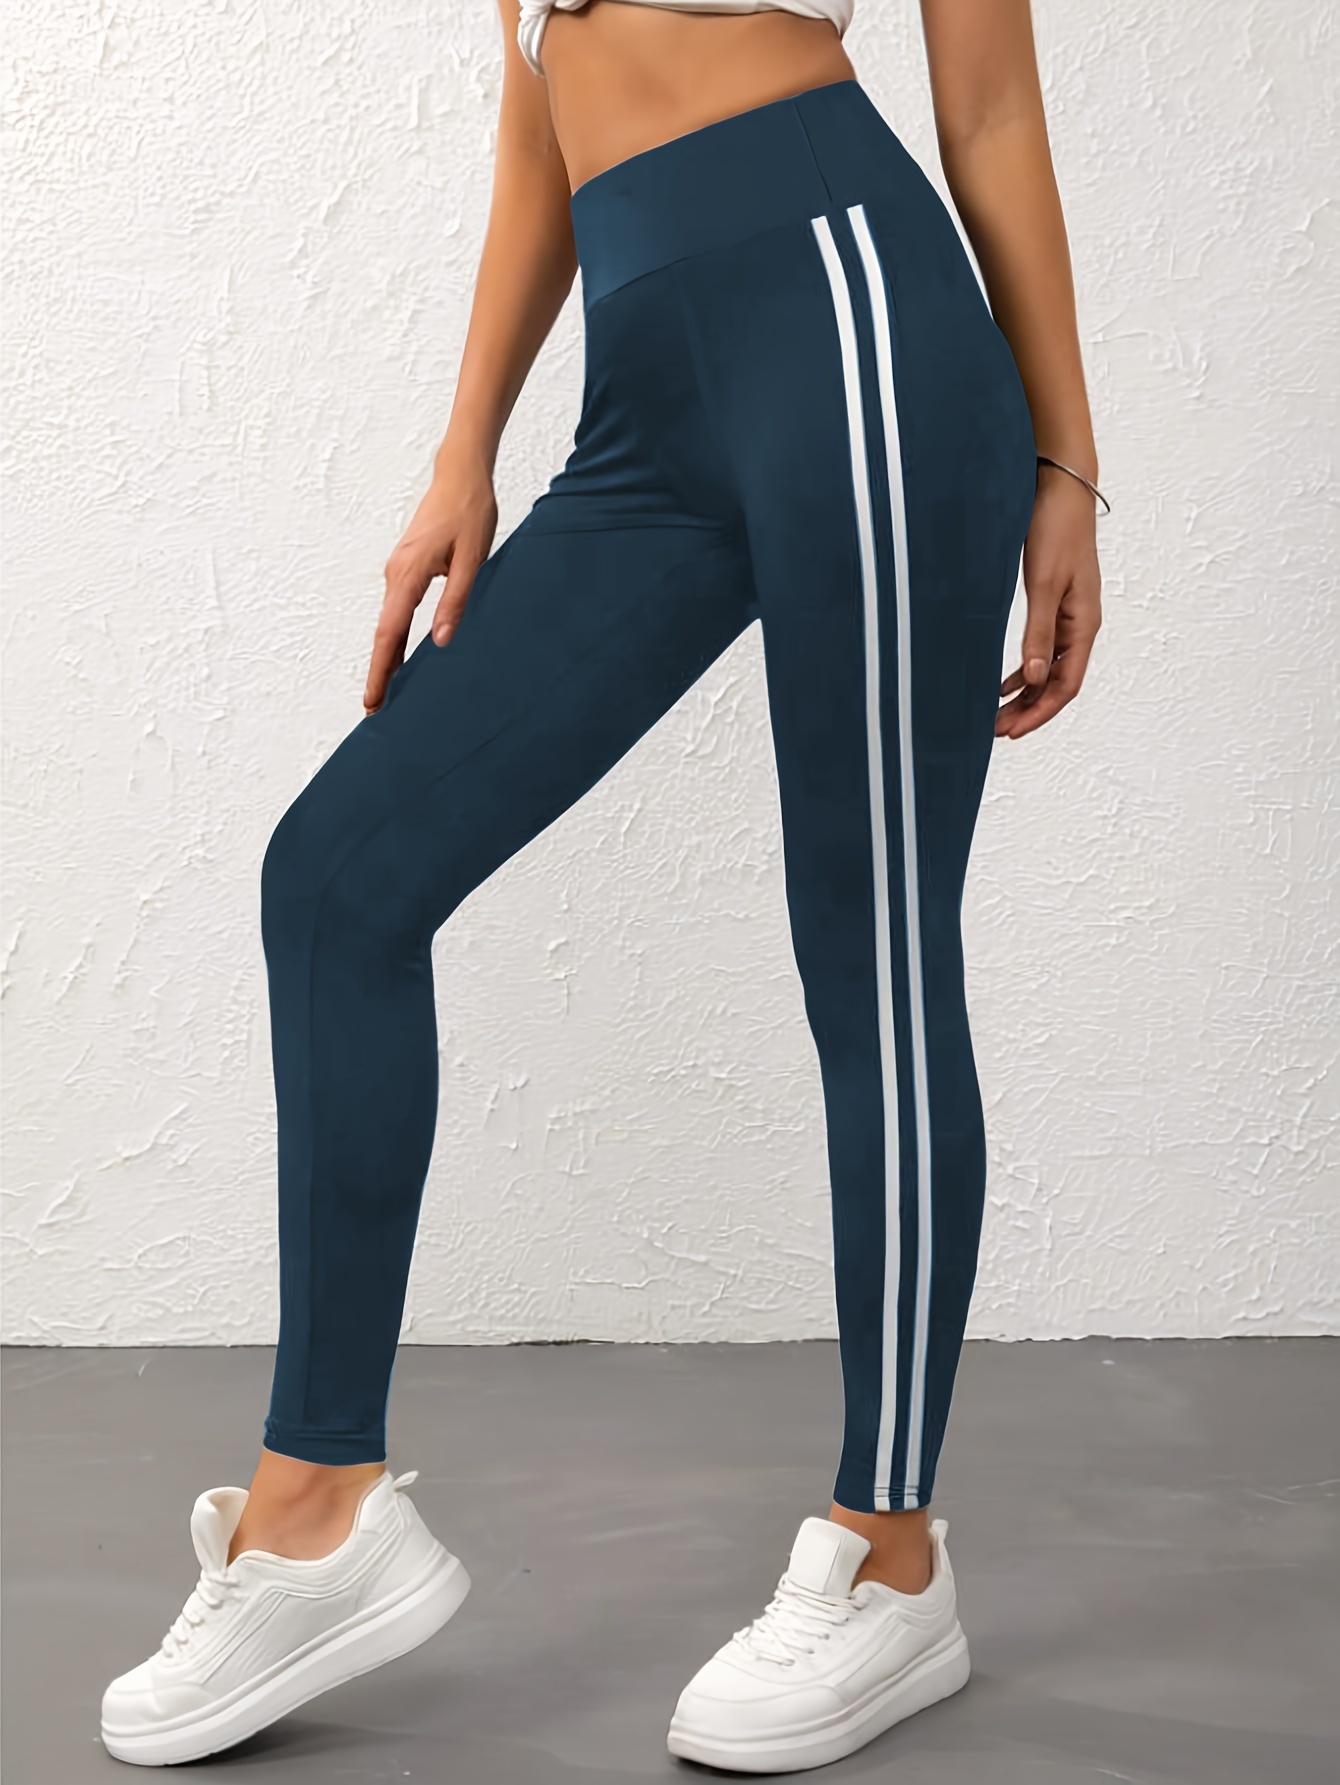 white Side Stripe Full Length Stylish Leggings For Women